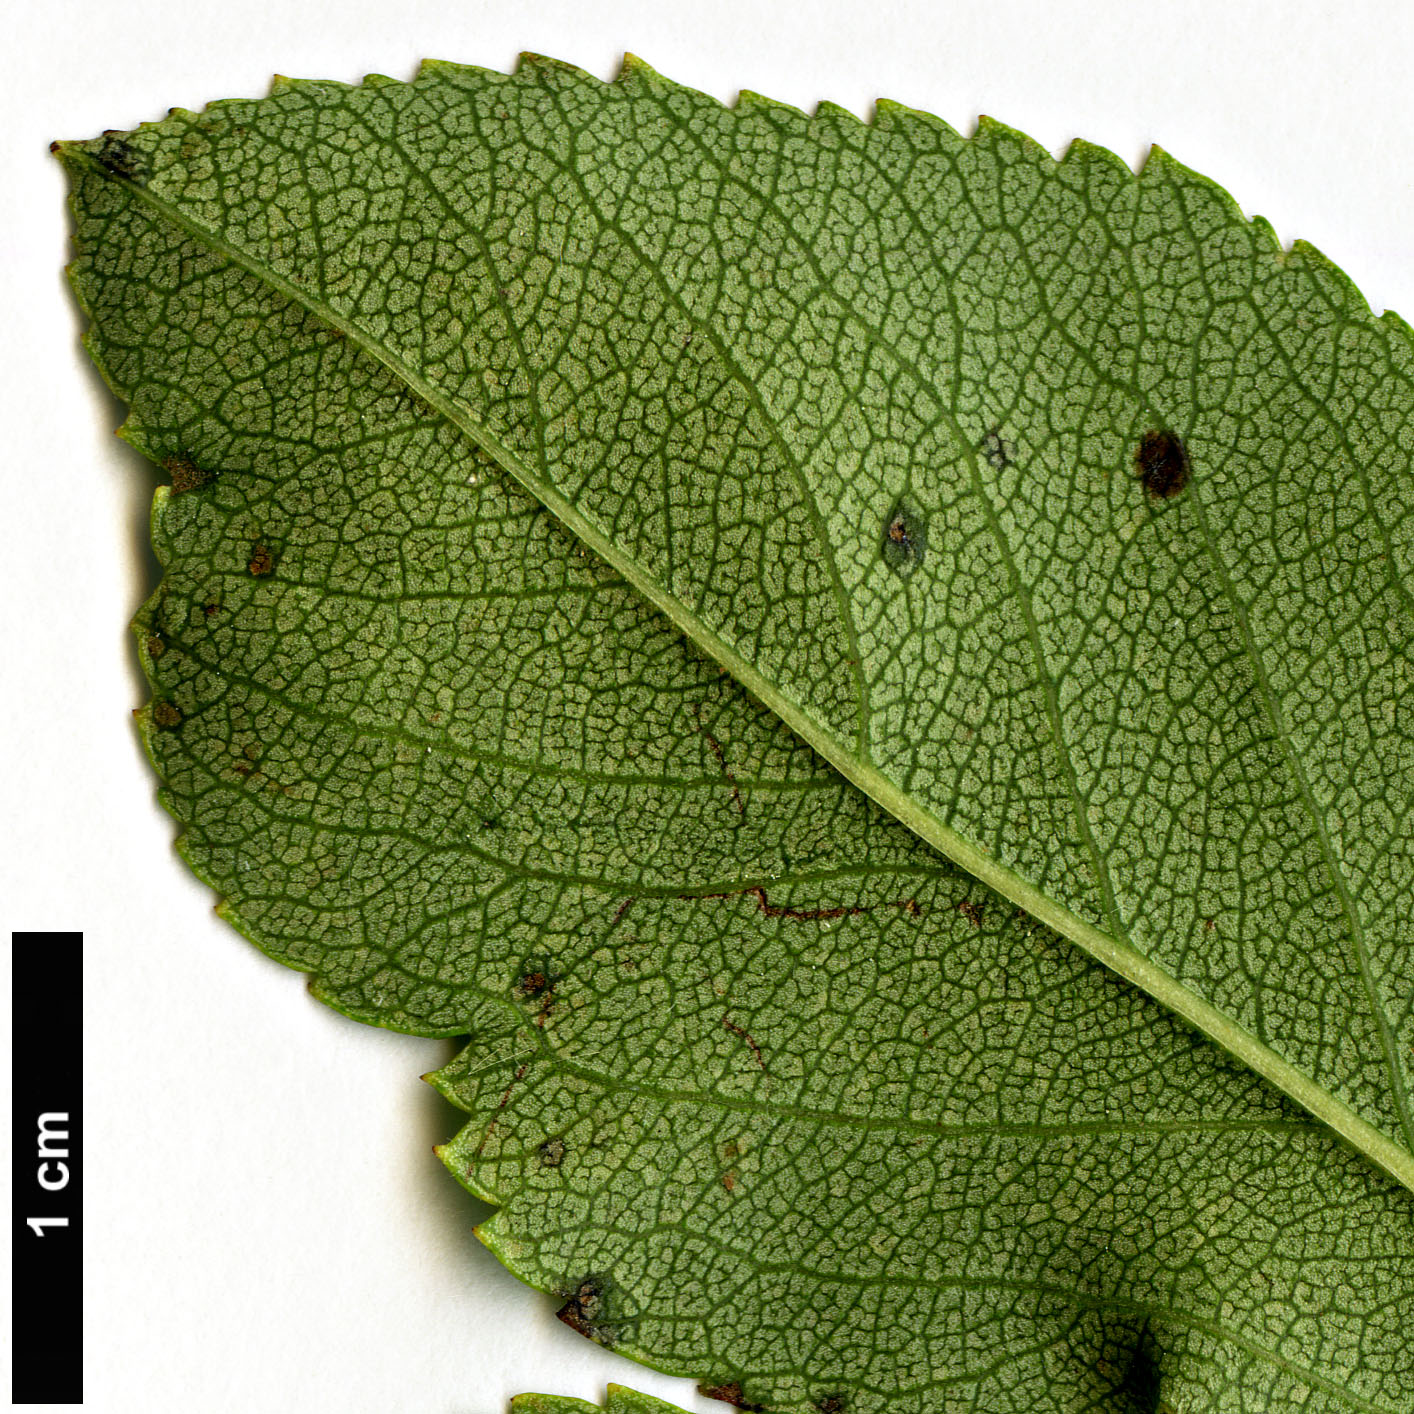 High resolution image: Family: Rosaceae - Genus: Crataegus - Taxon: dodgei